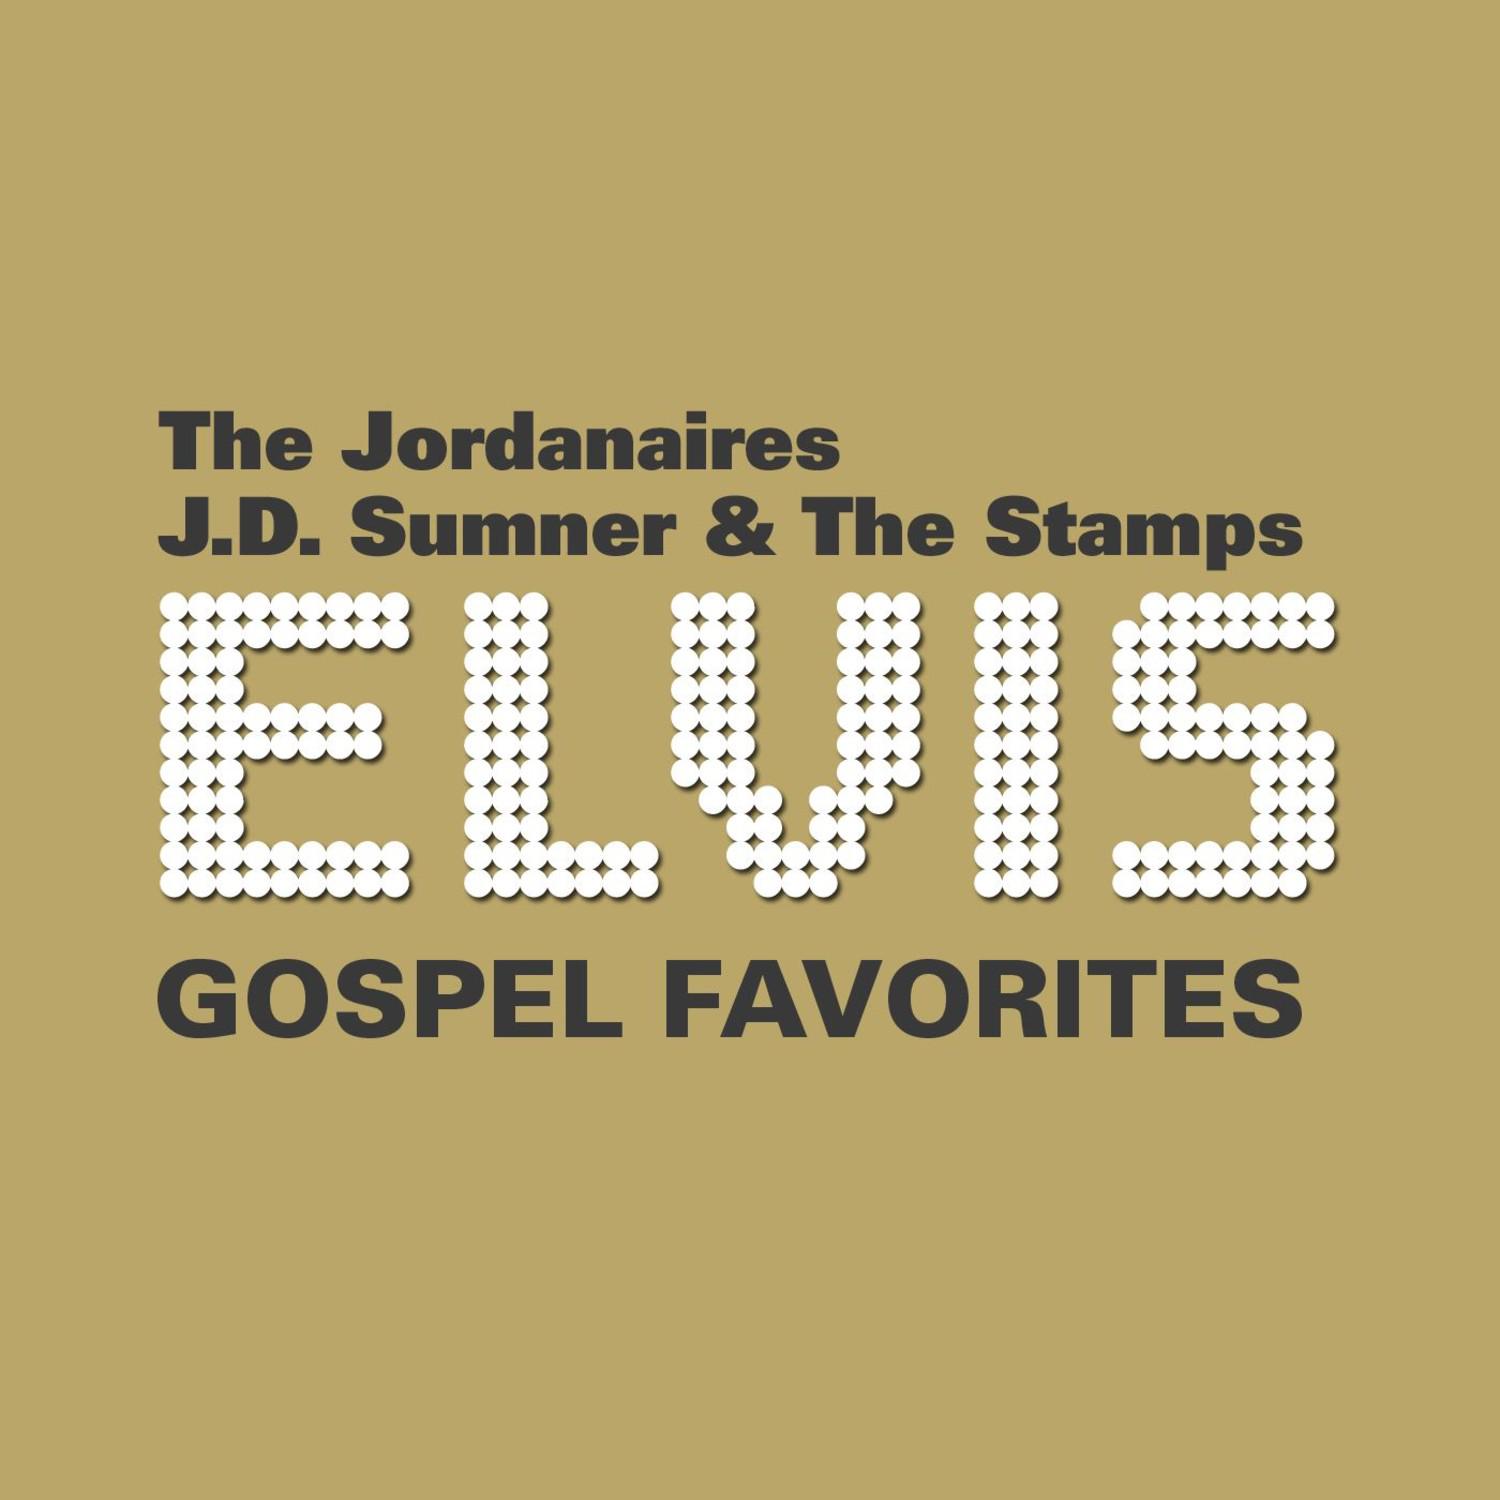 22 Elvis Gospel Favorites